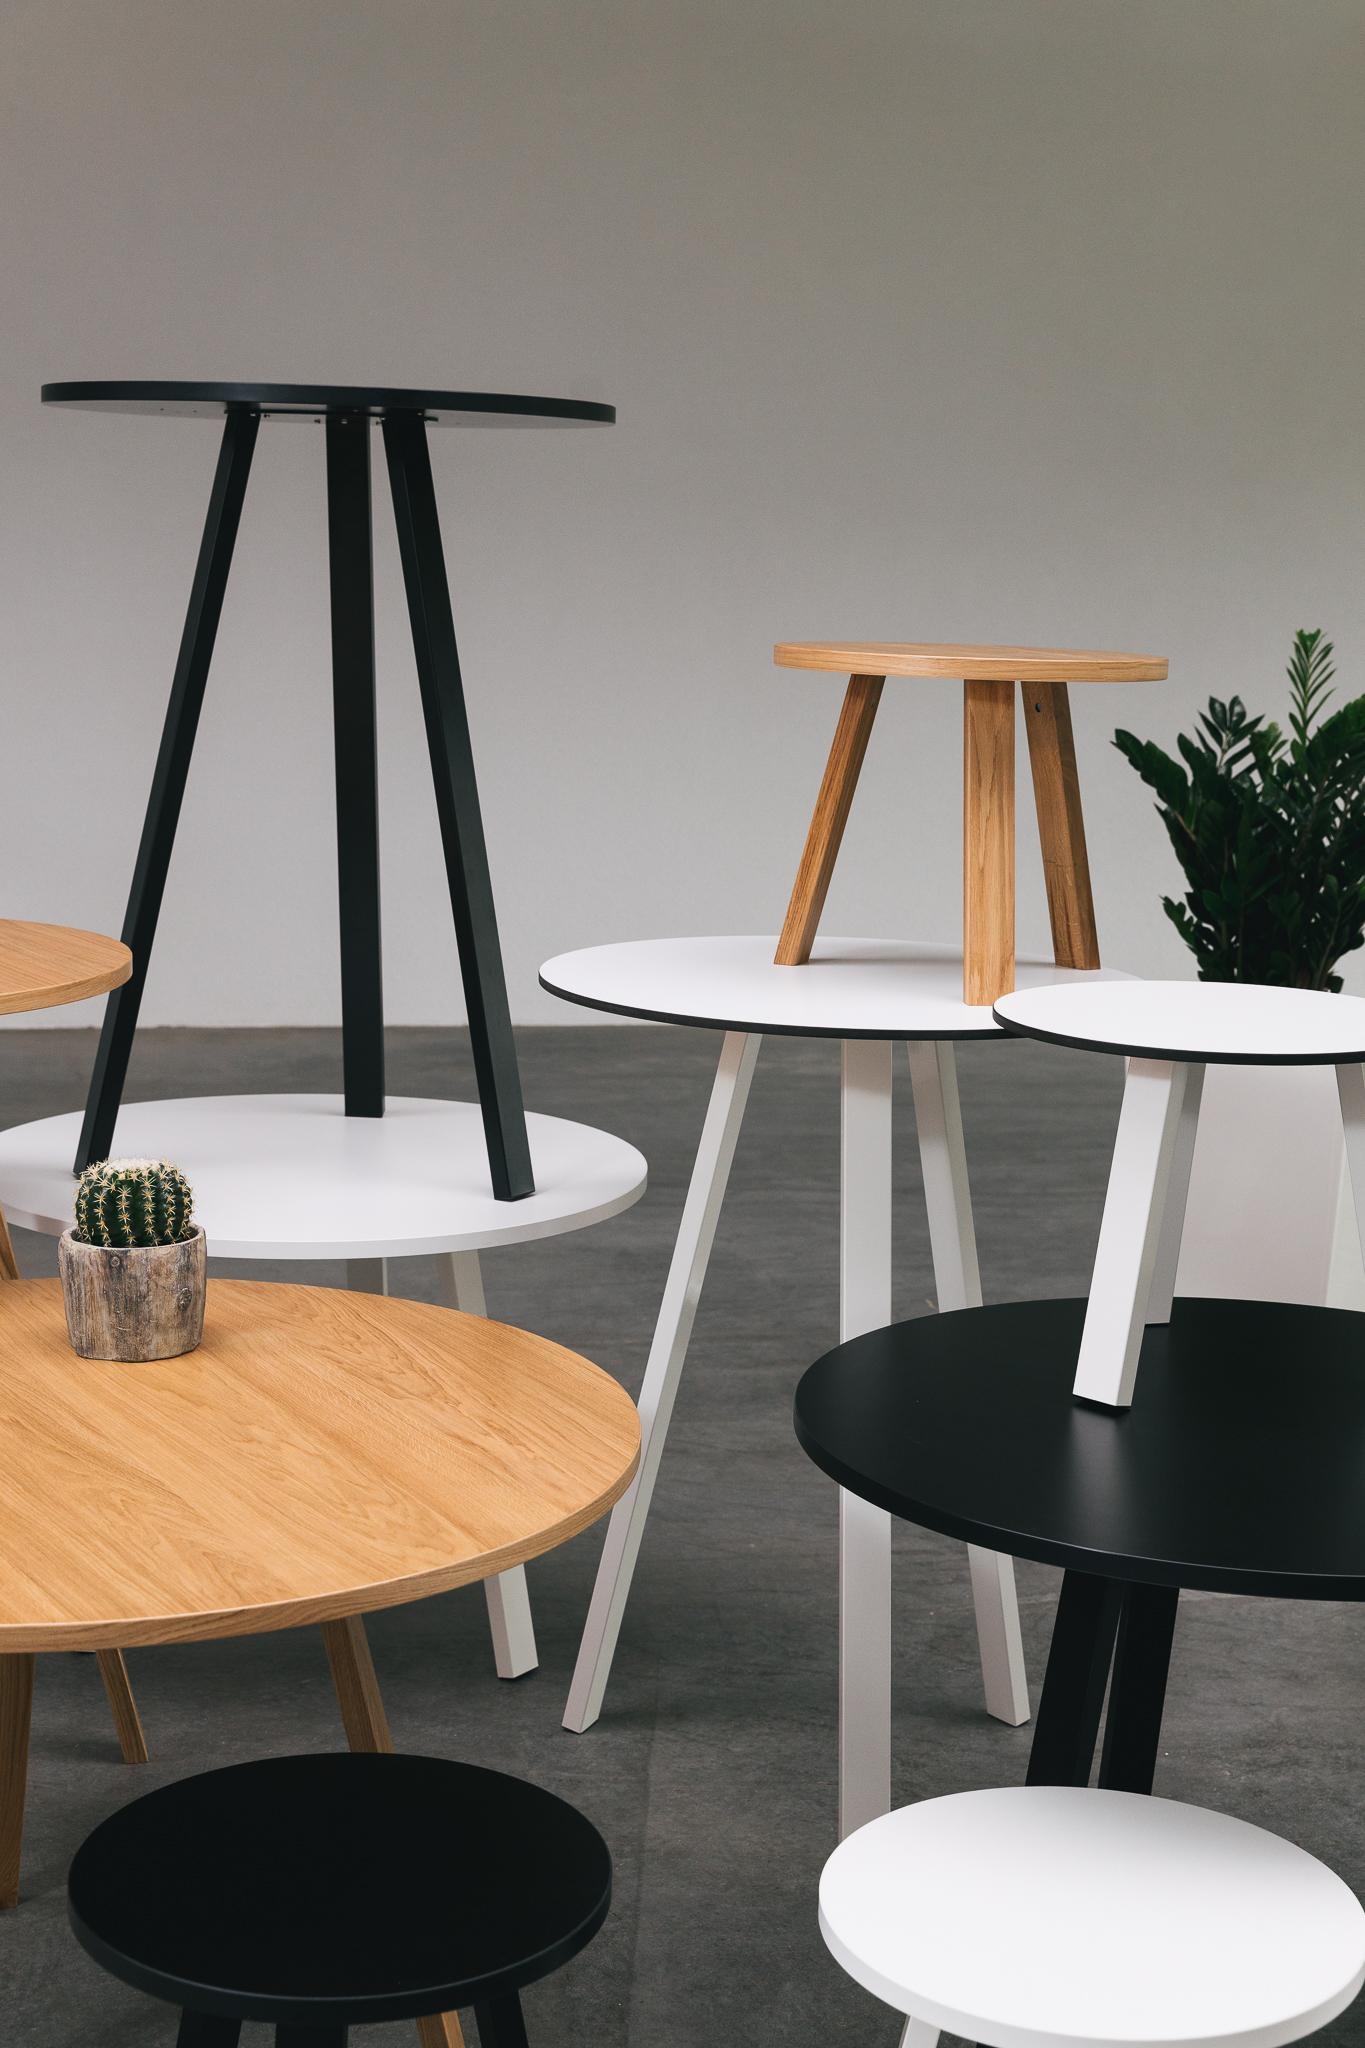 Die Dreibein Möbel von @kuehnlewaiko fügen sich perfekt in jede Einrichtung ein. #zuhausesein #dreibein #tisch #design